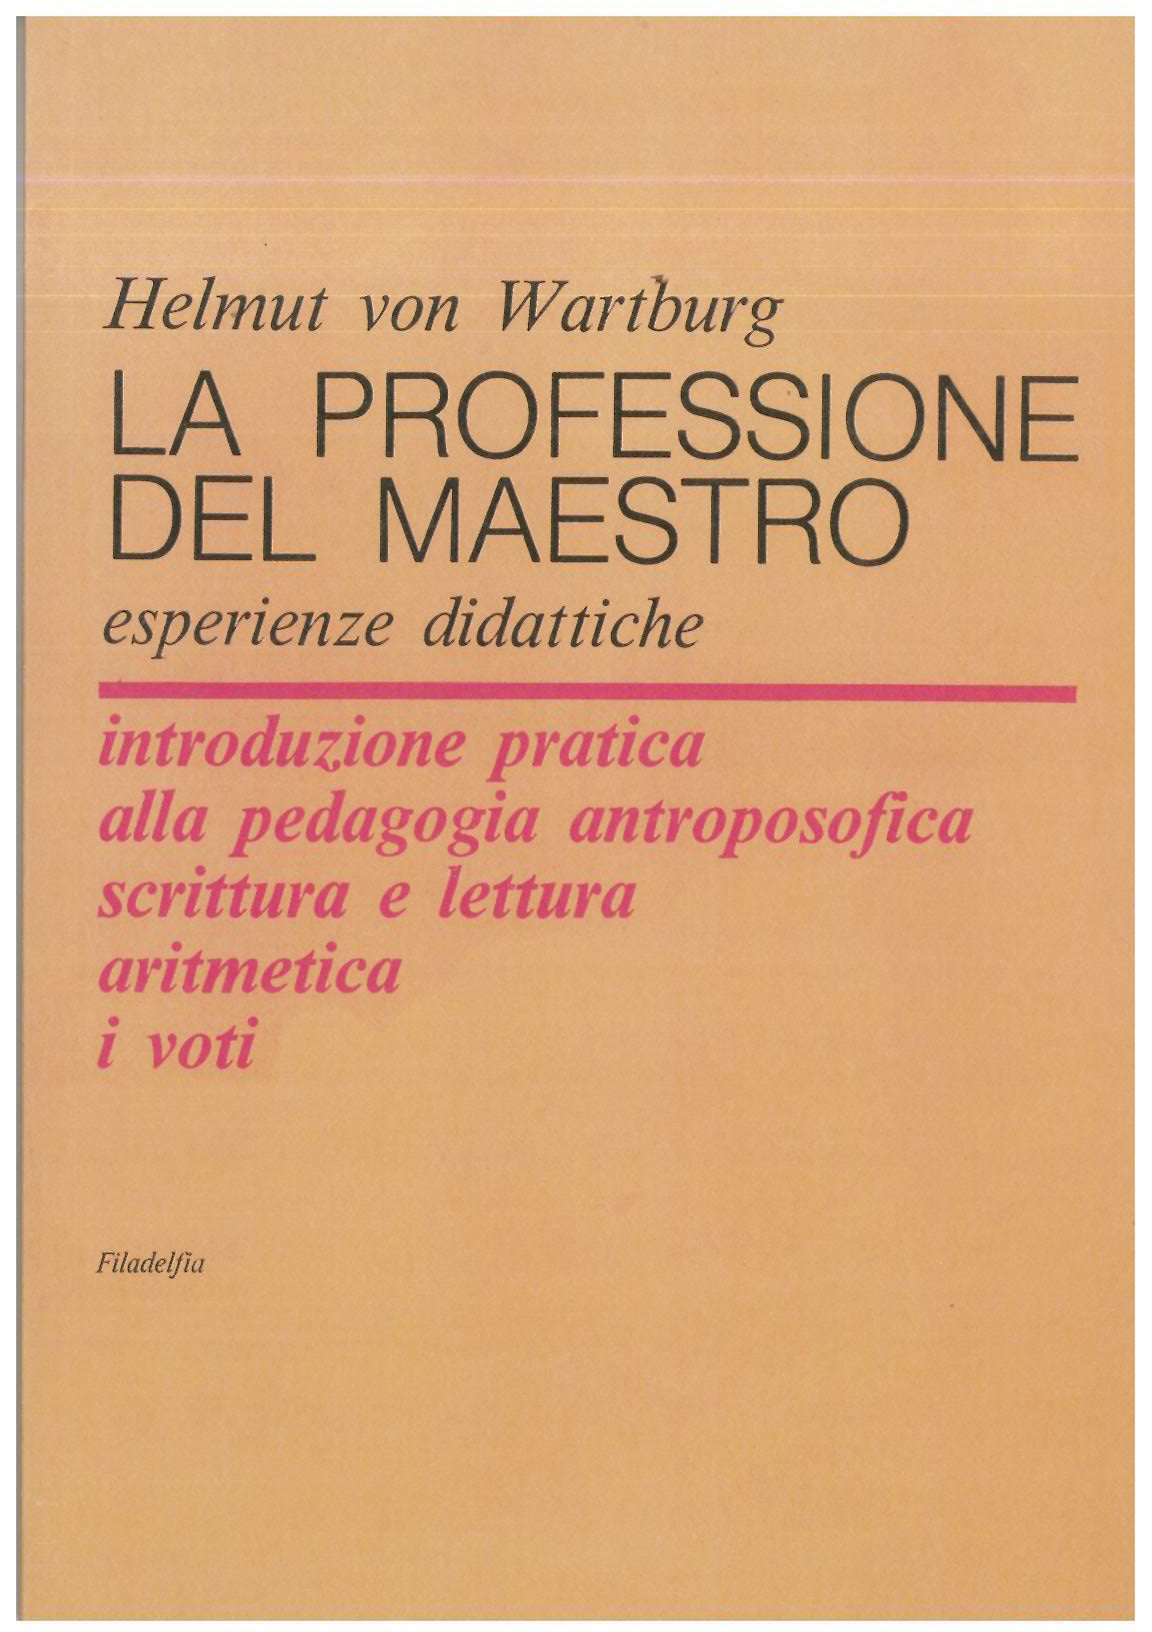 La professione di maestro - von Wartburg H.